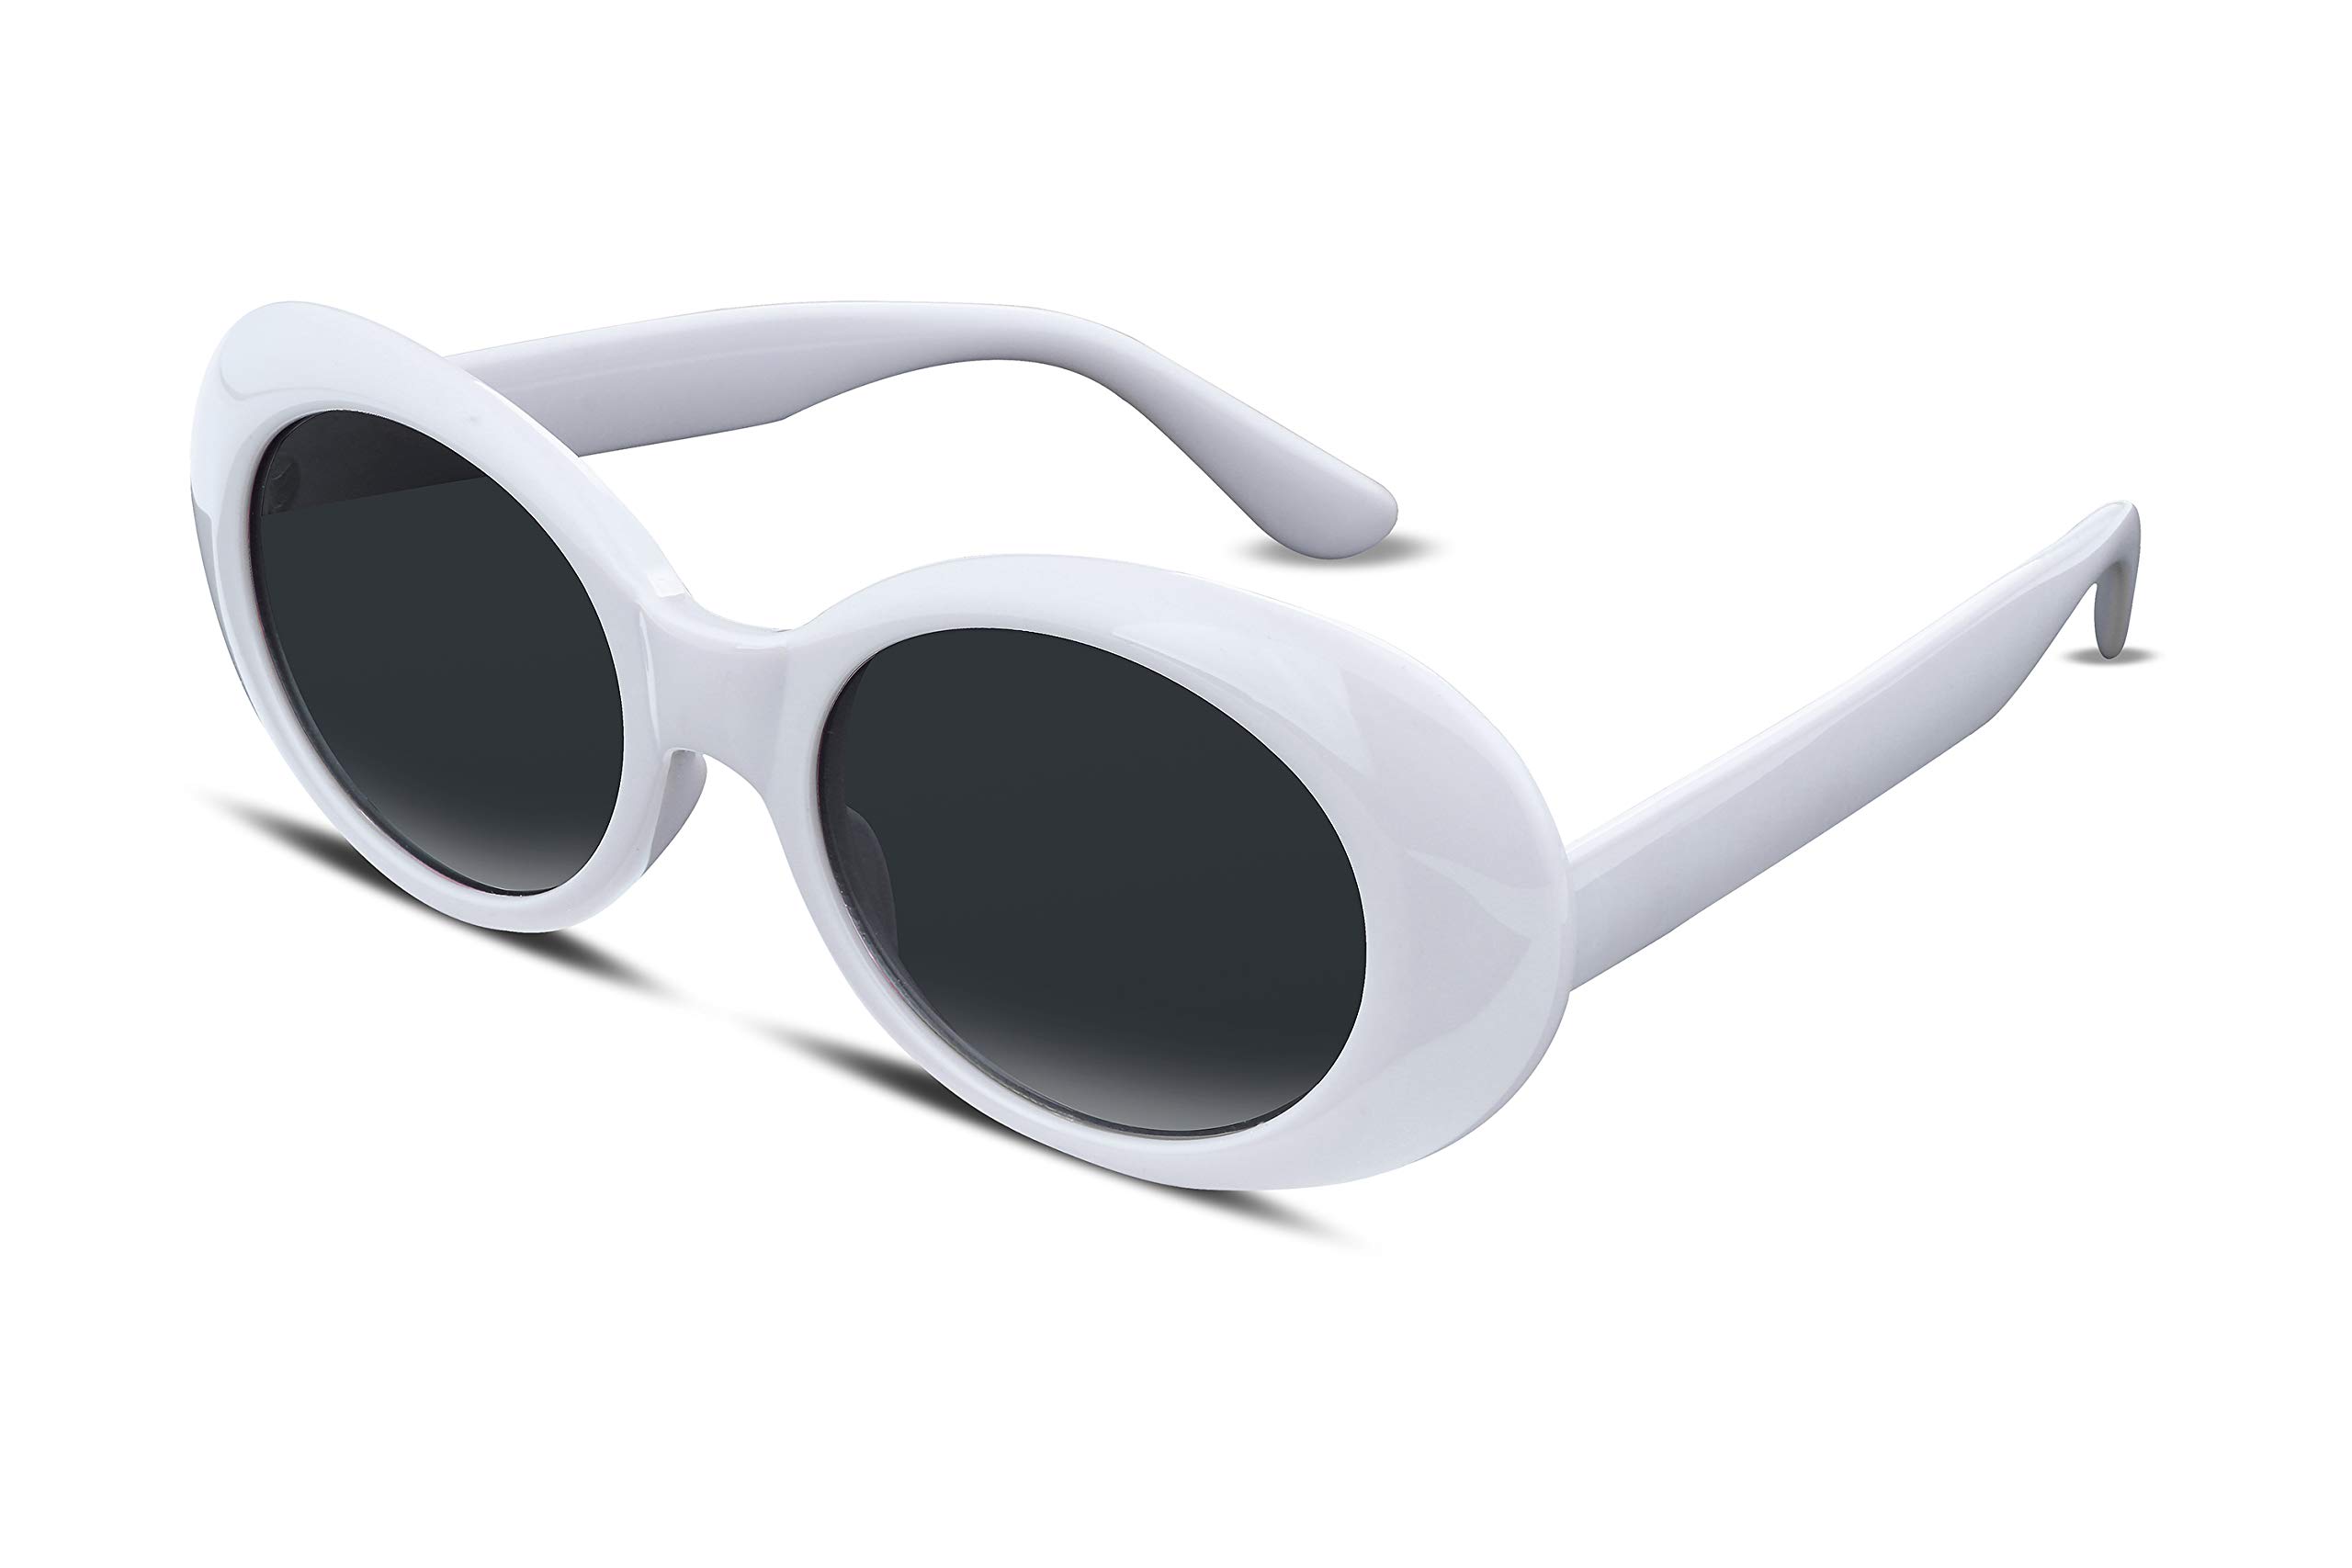 Unisex Sunglasses, Size: Medium